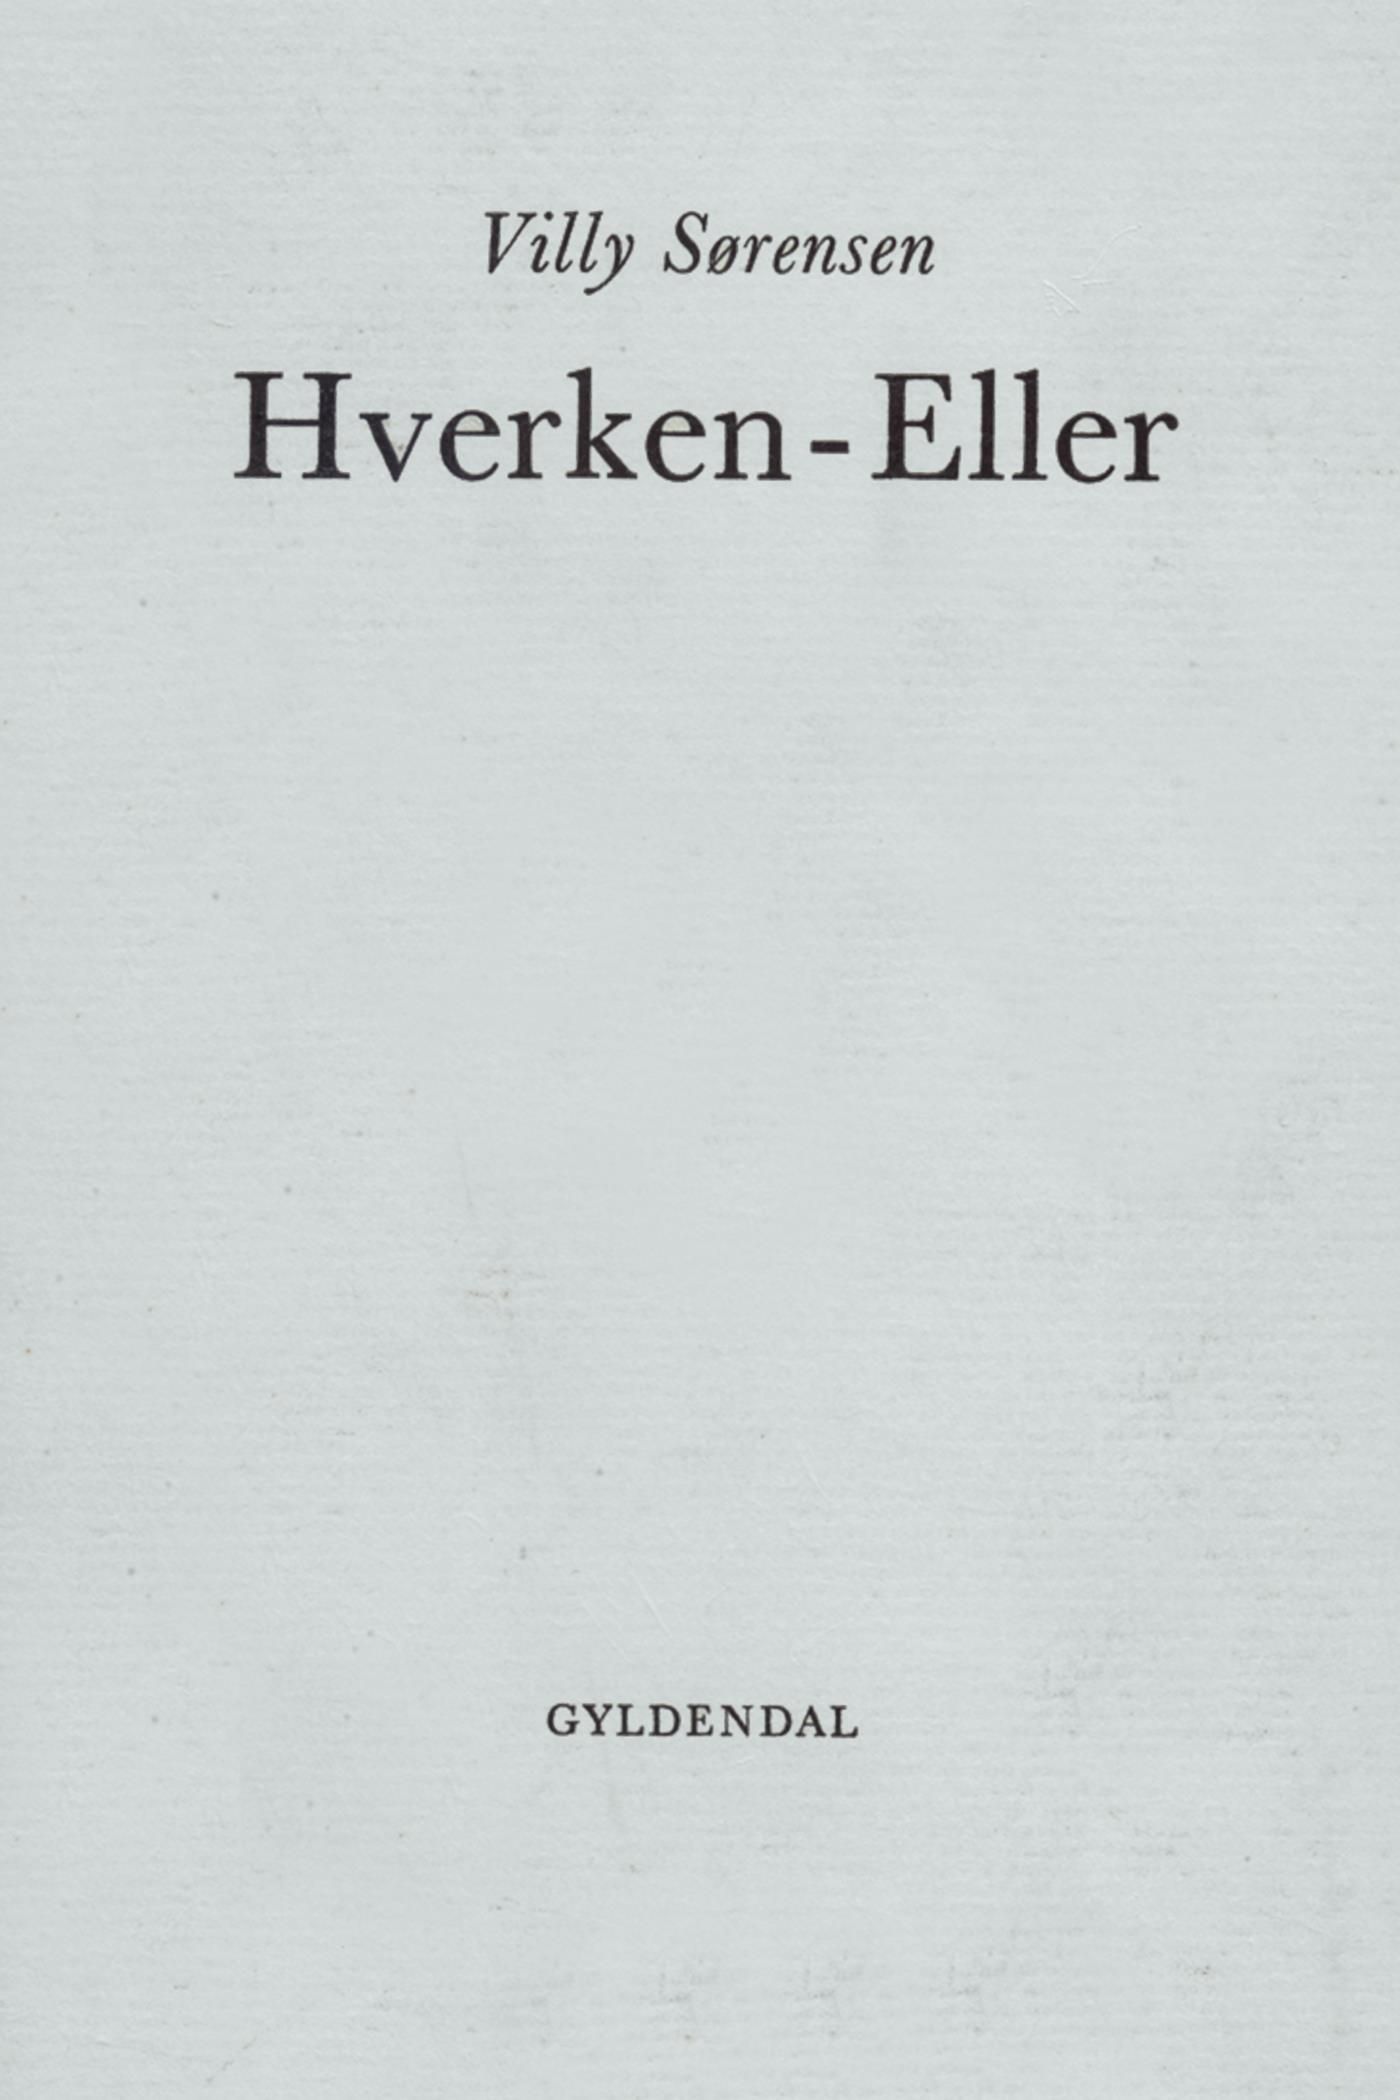 Hverken-Eller, e-bog af Villy Sørensen